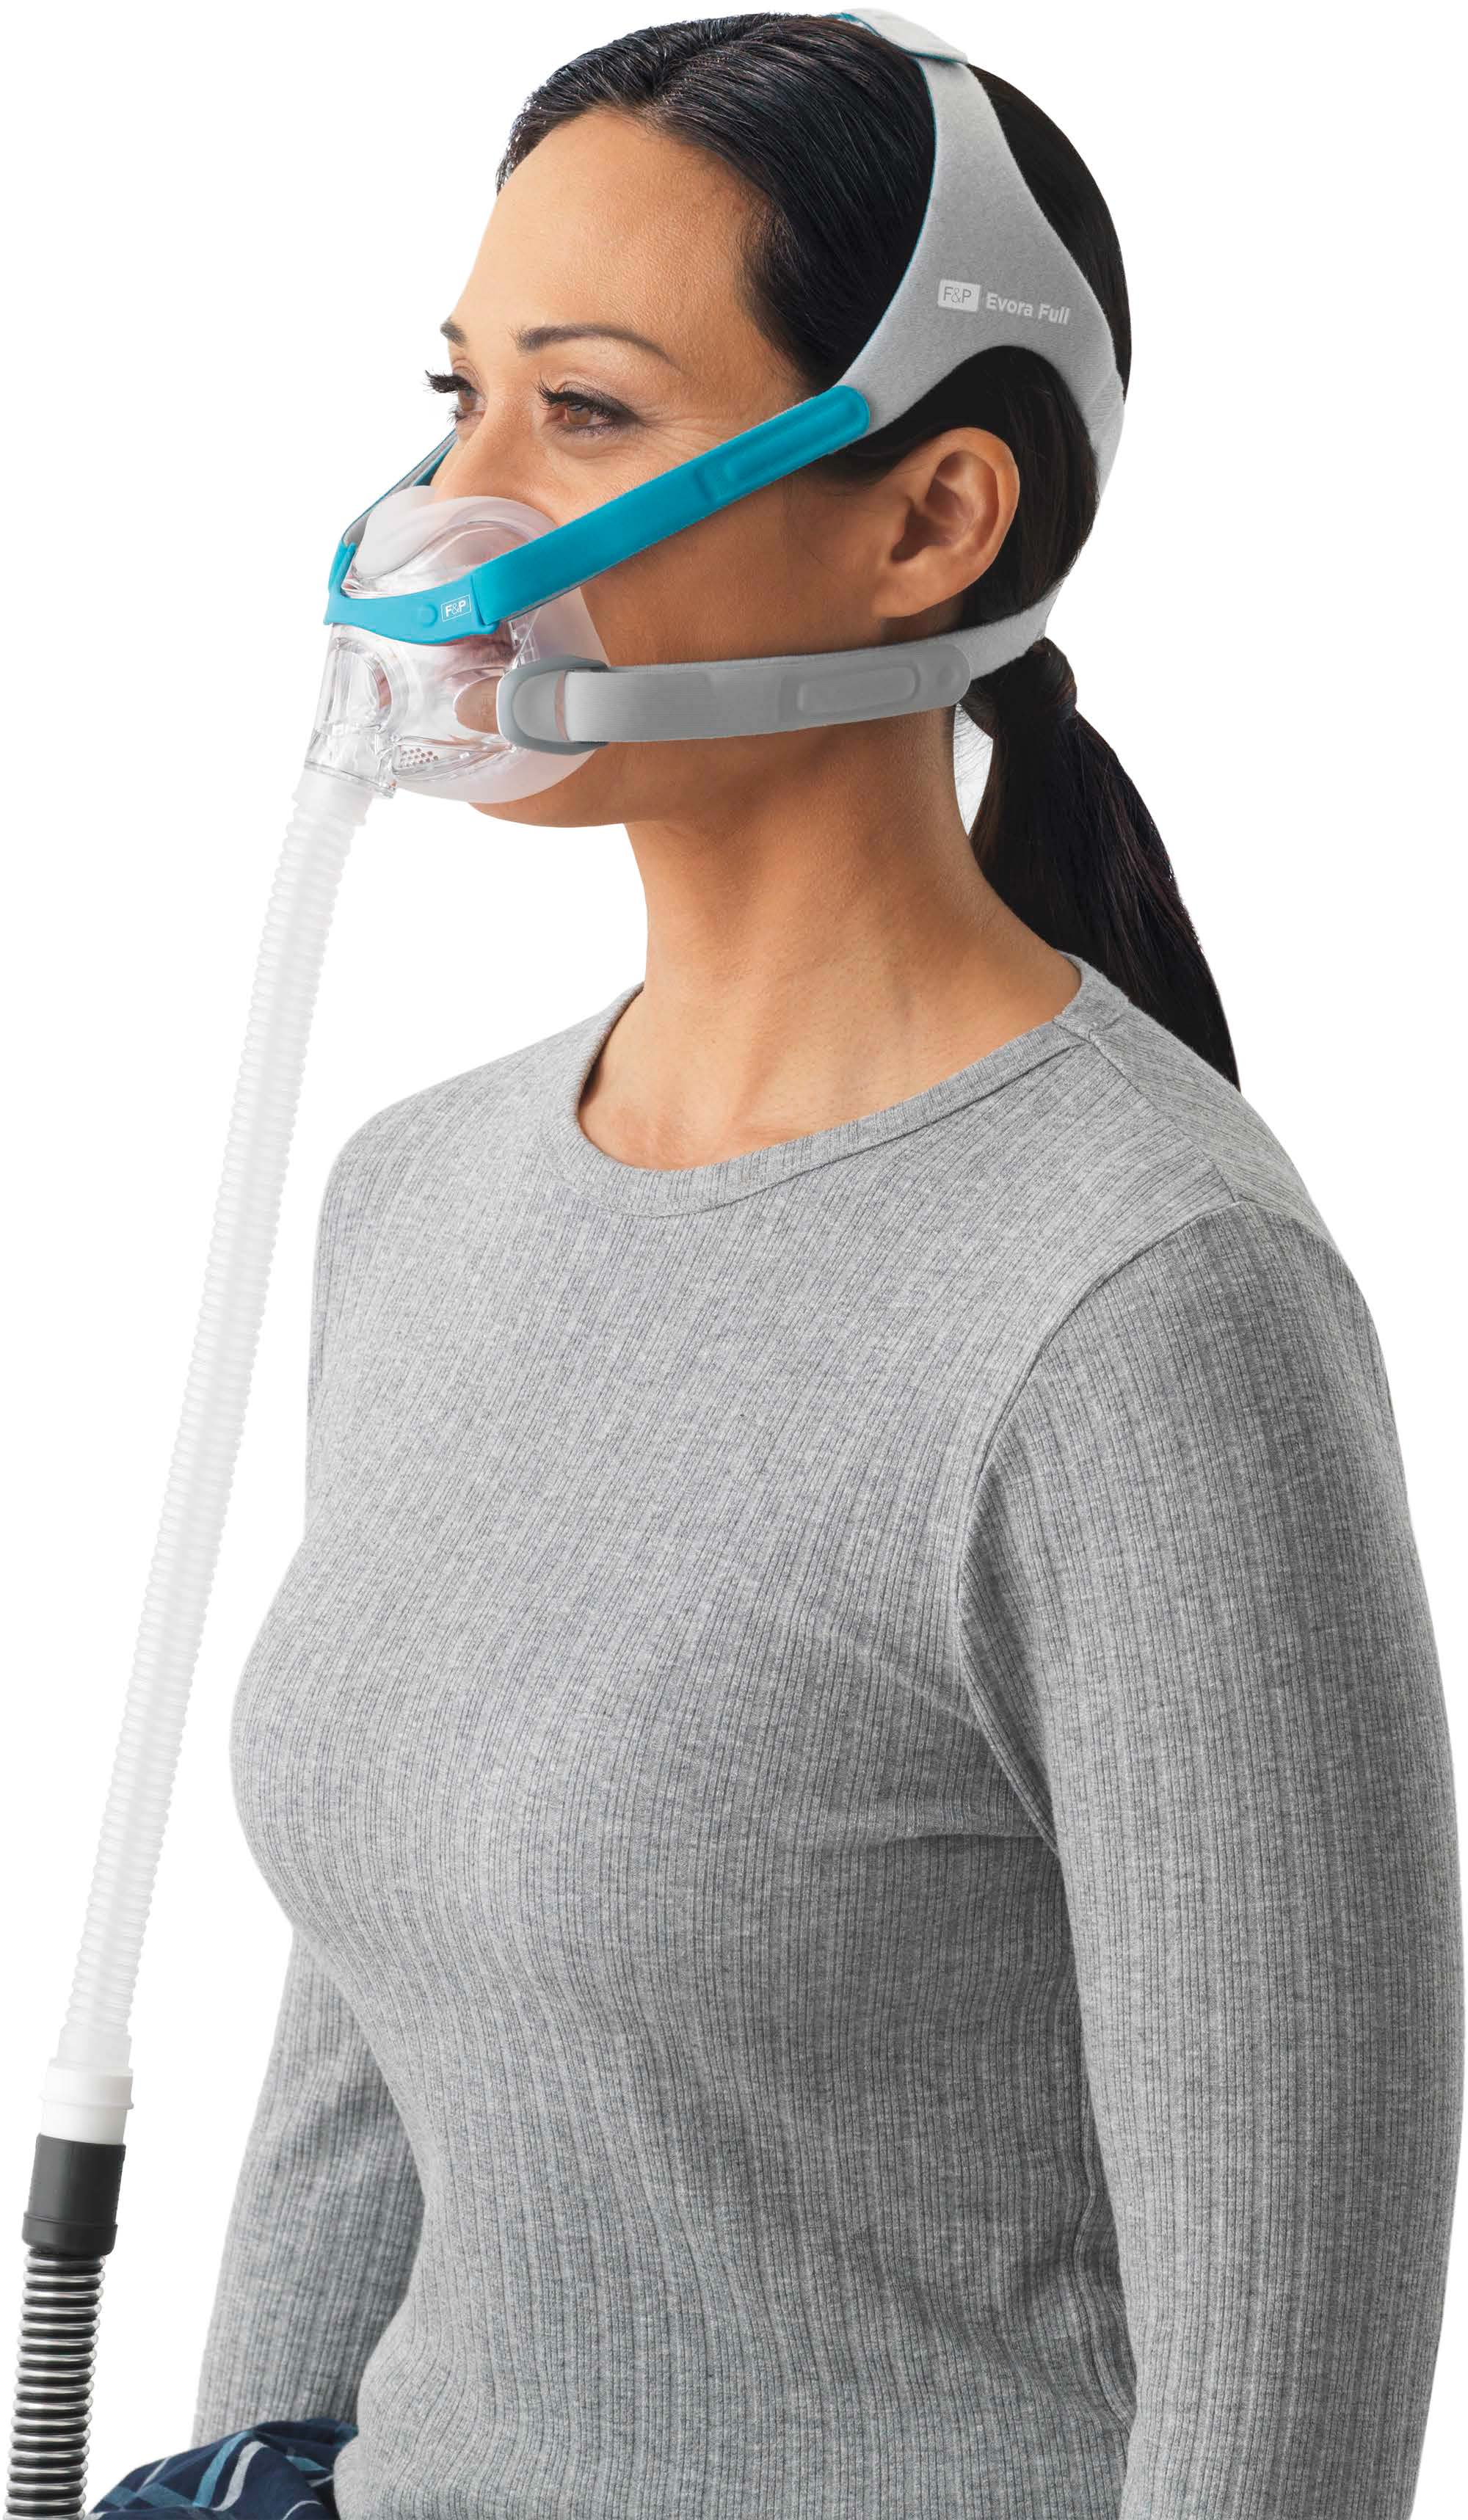 Evora Full Face CPAP Mask